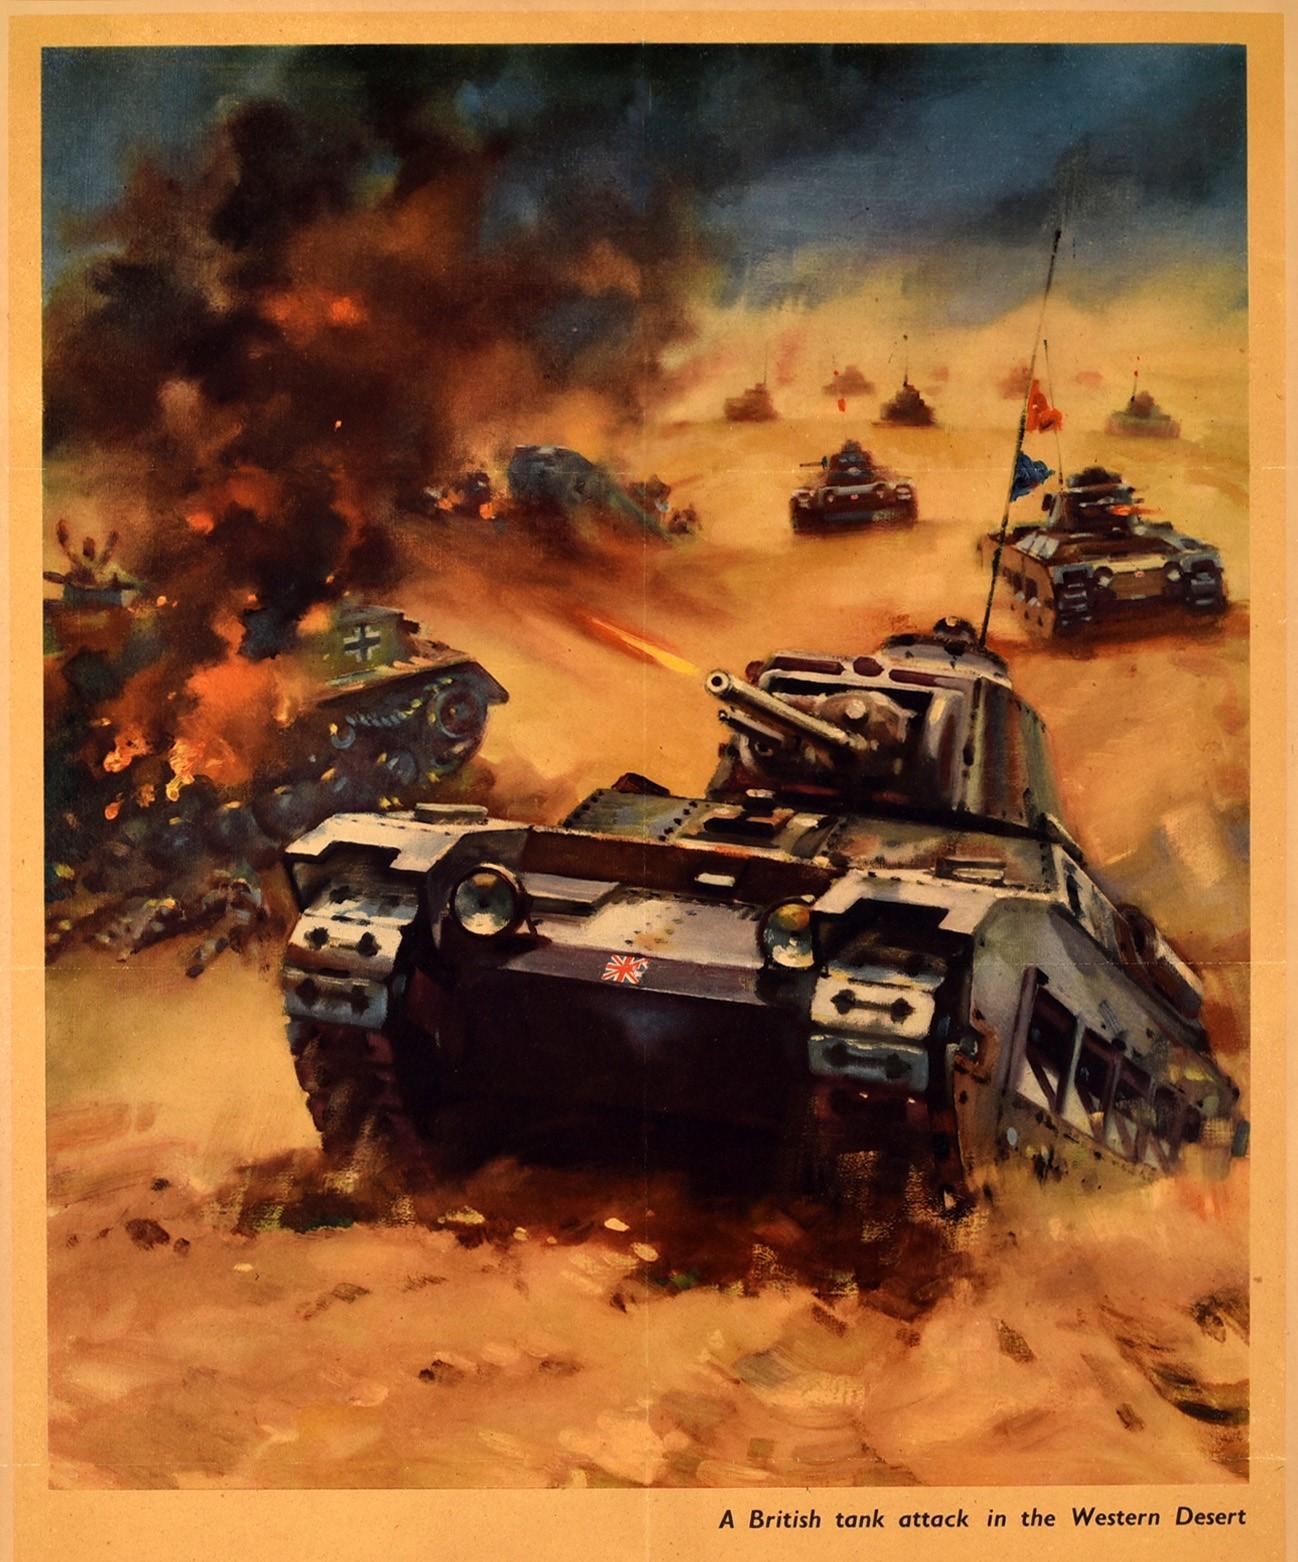 Originales Propagandaplakat aus dem Zweiten Weltkrieg, Back Them Up! Ein britischer Panzerangriff in der westlichen Wüste, mit einer dynamischen Illustration eines Panzers mit britischer Flagge auf der Vorderseite, der einen kleinen Sandhügel